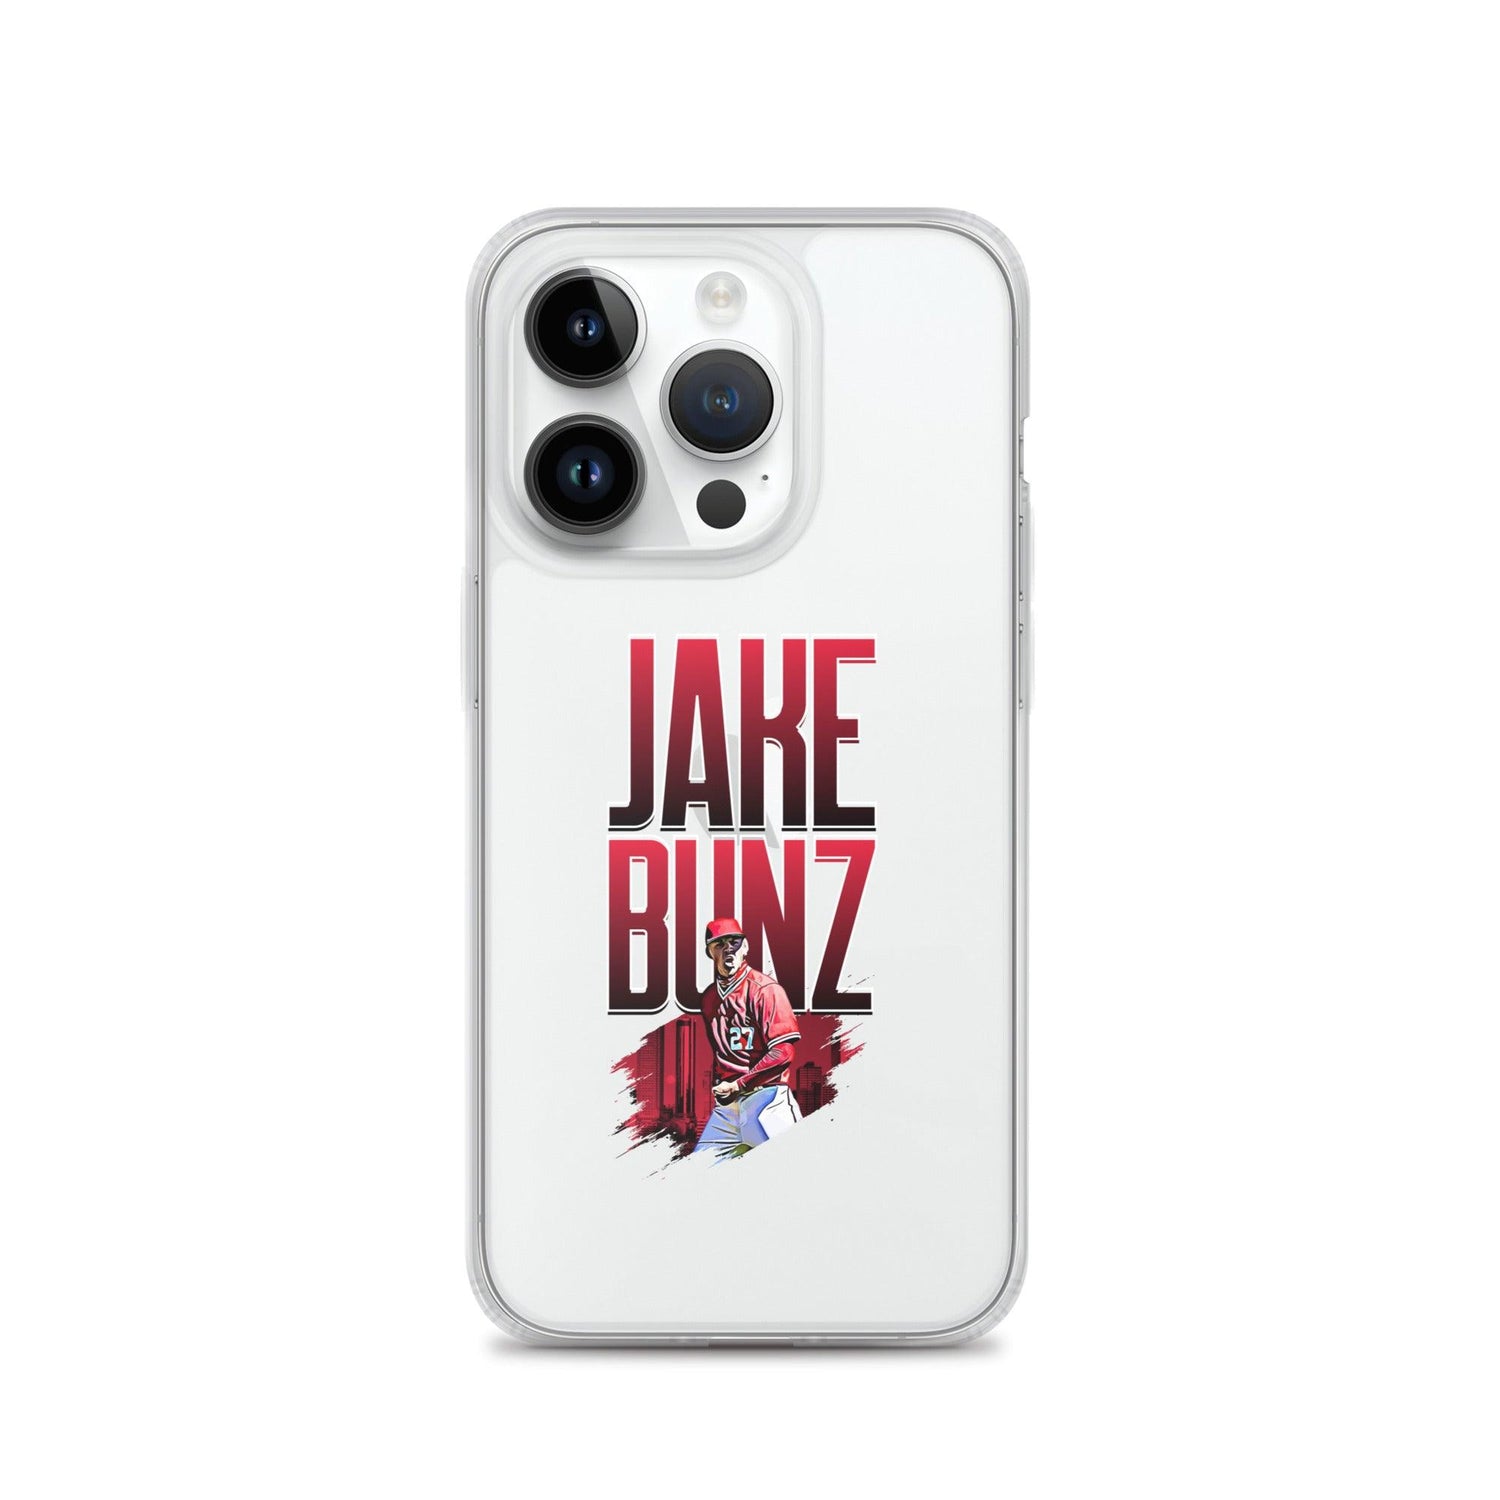 Jake Bunz "Celebrate" iPhone Case - Fan Arch